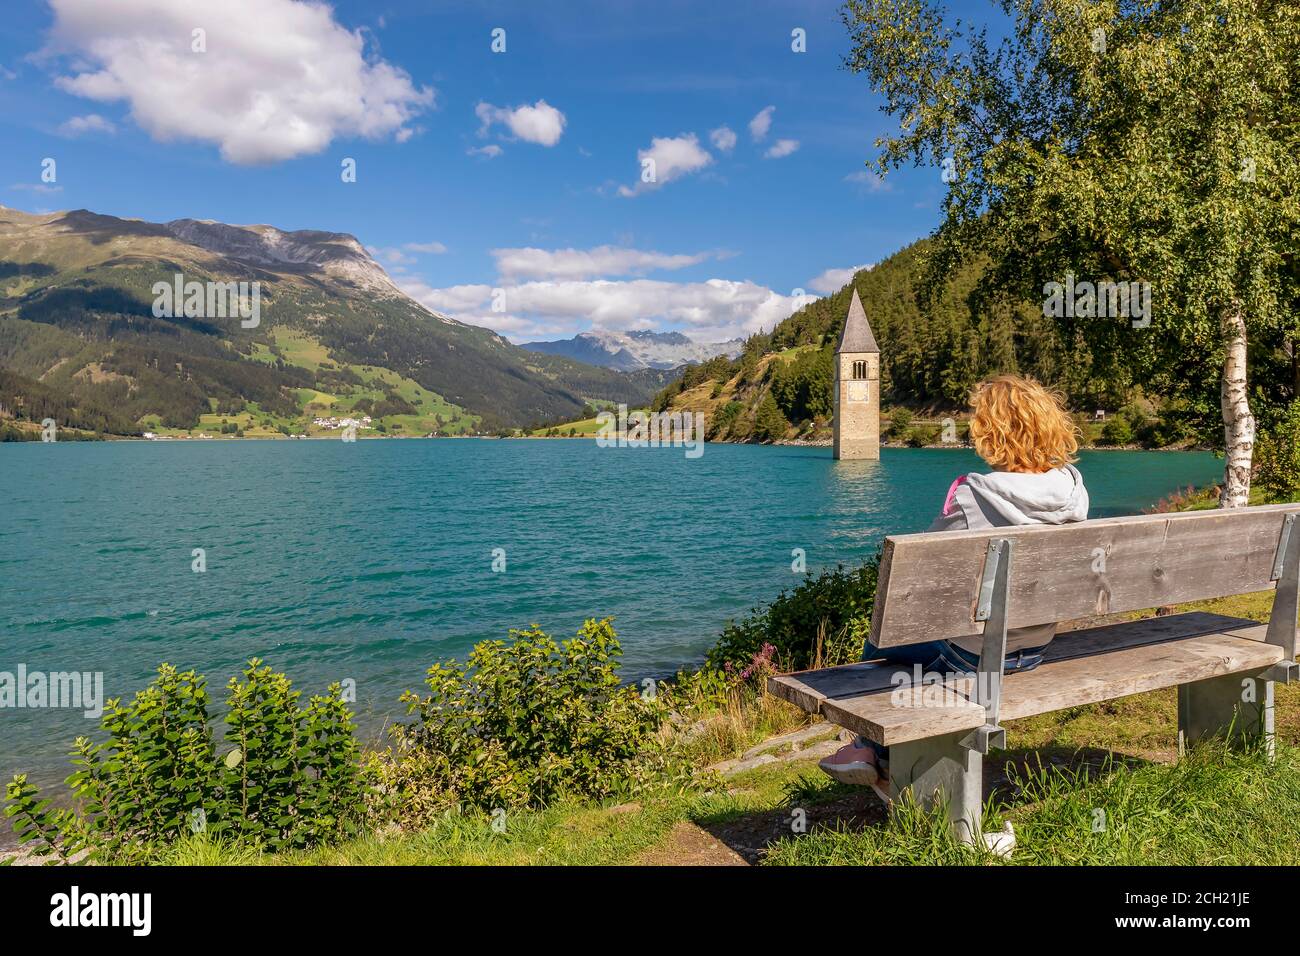 Una rubia sentada en un banco observa el campanario sumergido en el lago Resia, Curon Venosta, Tirol del Sur, Italia Foto de stock